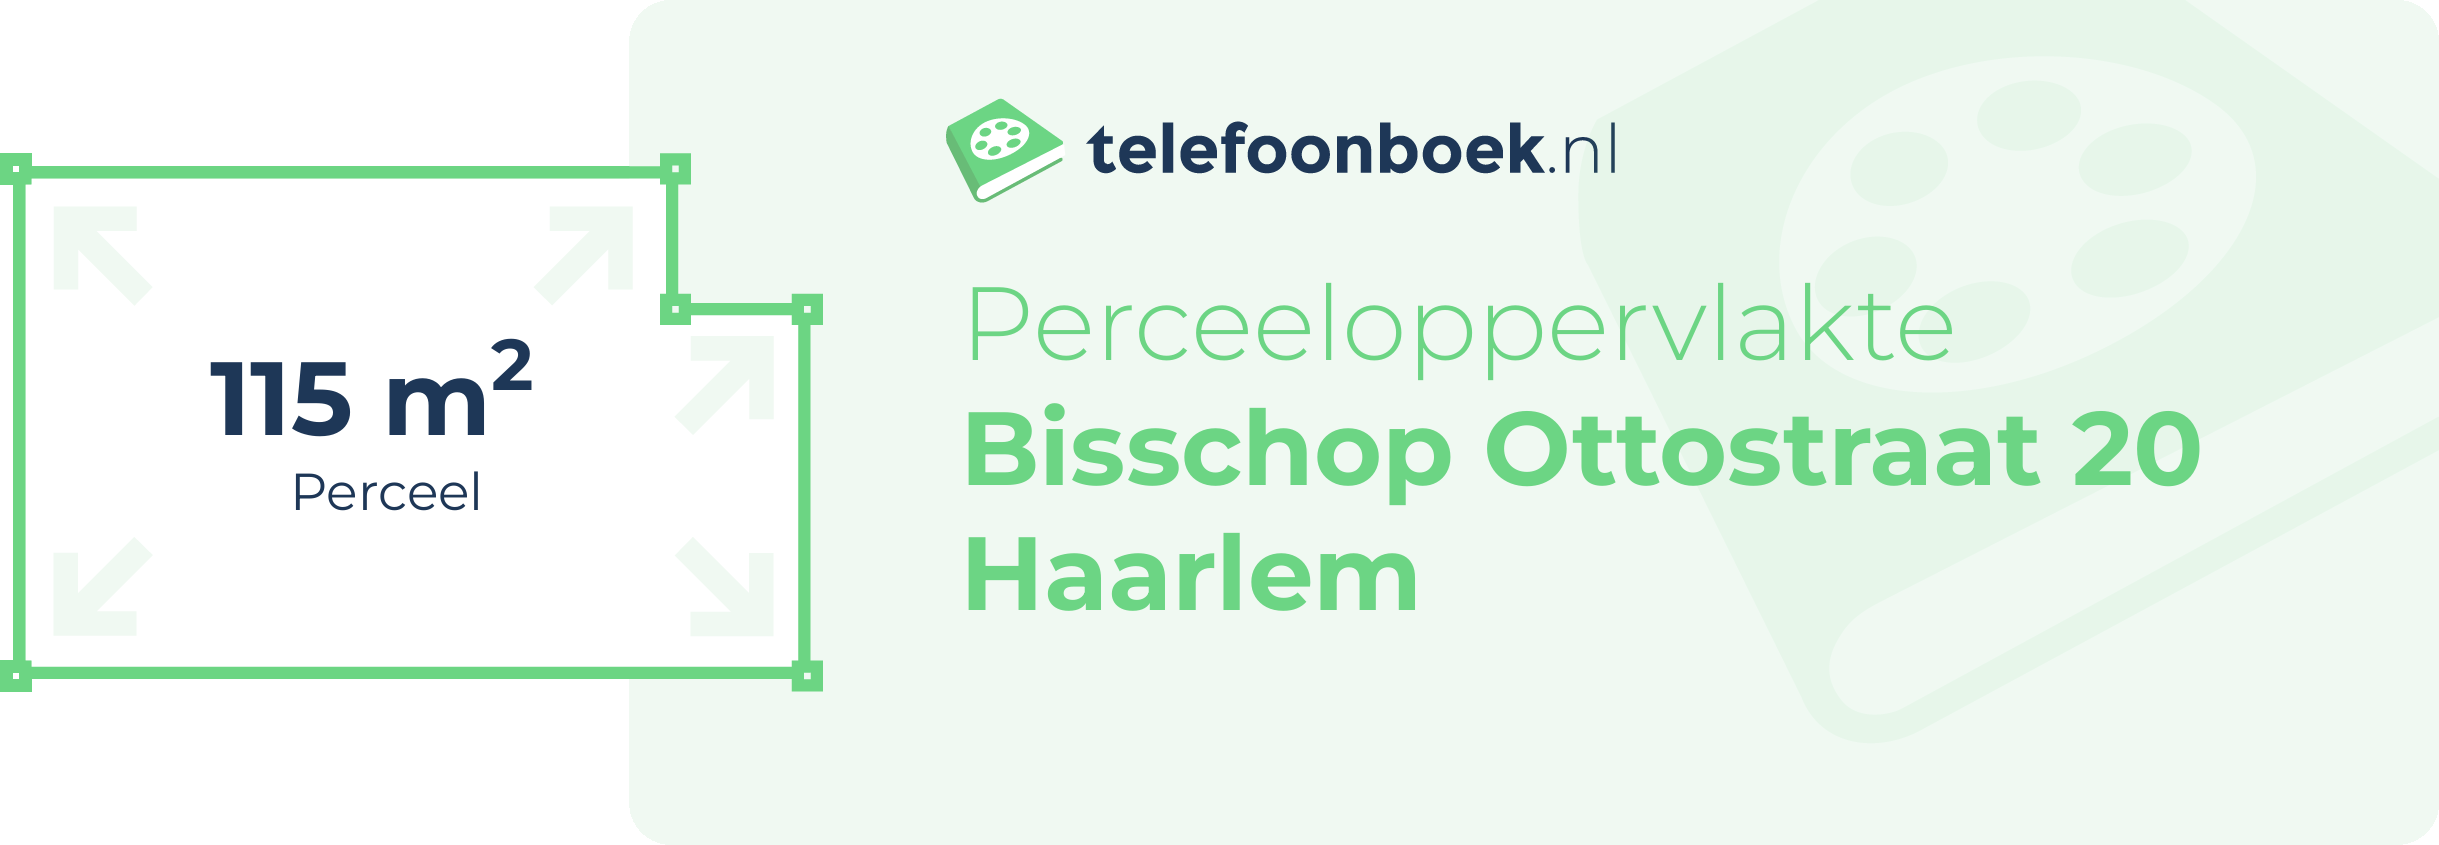 Perceeloppervlakte Bisschop Ottostraat 20 Haarlem